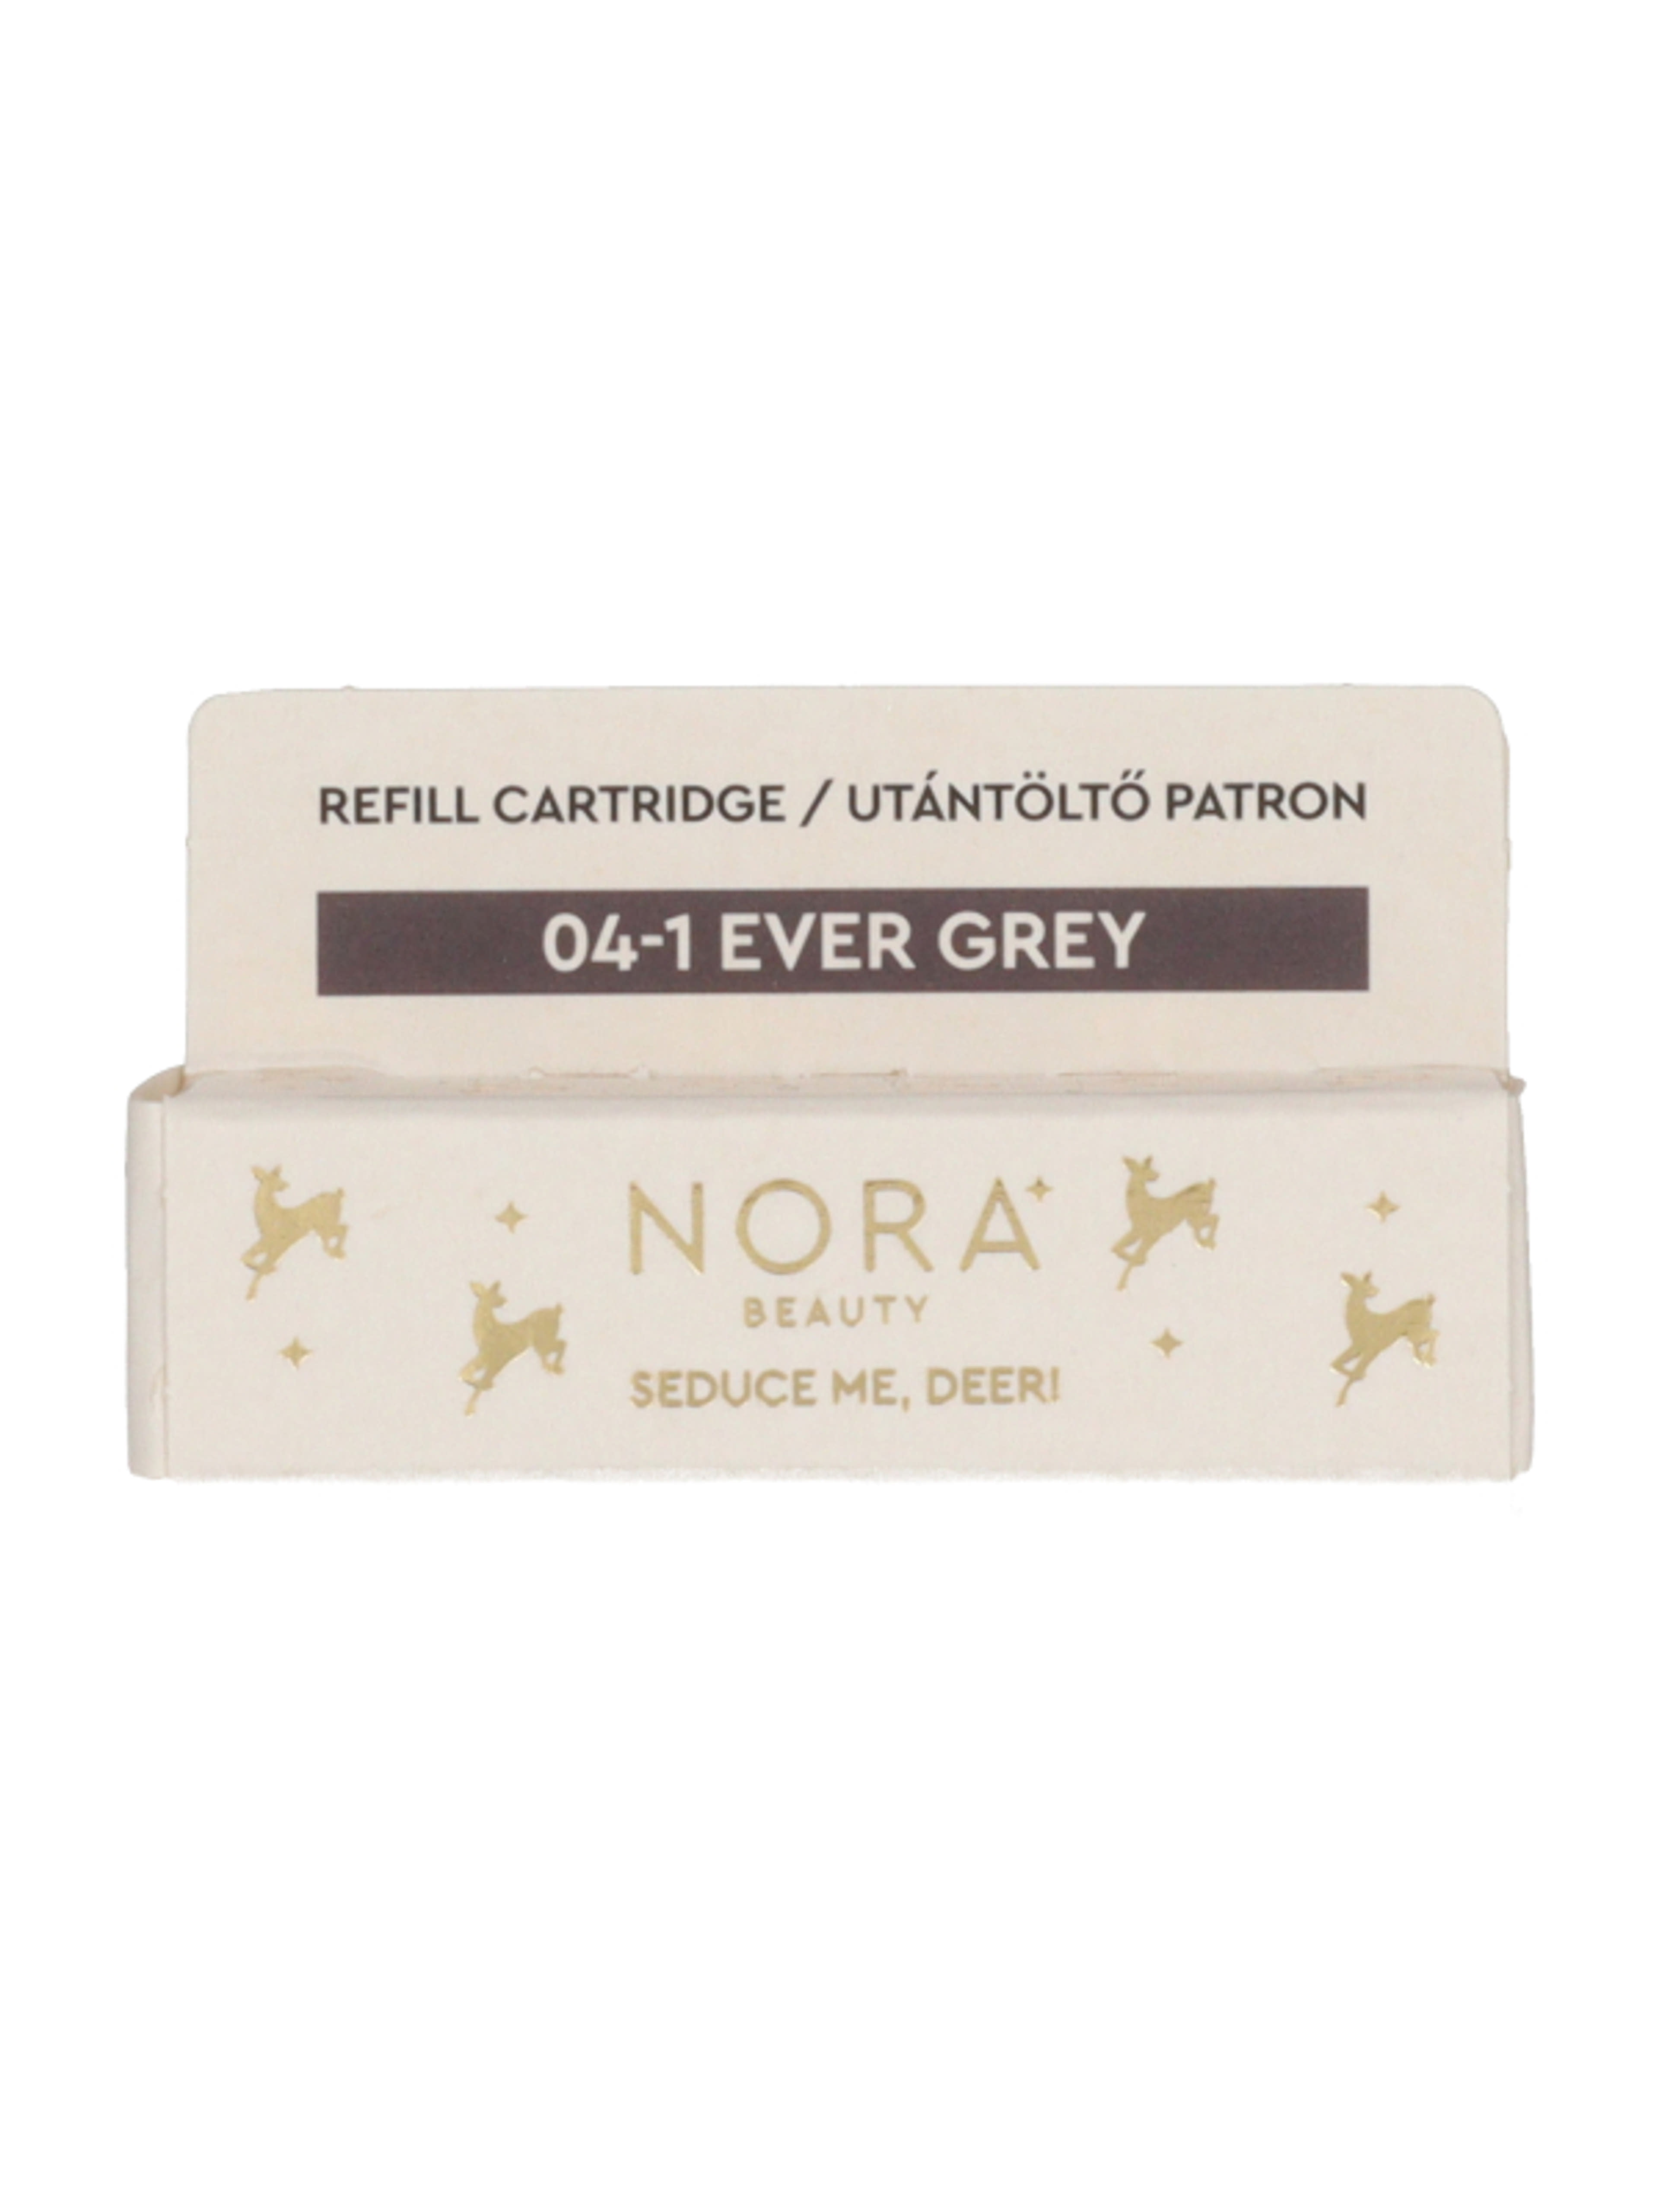 Nora Beauty szemhéjpúder applikátor utántöltő /04-1 ever gray - 1 db